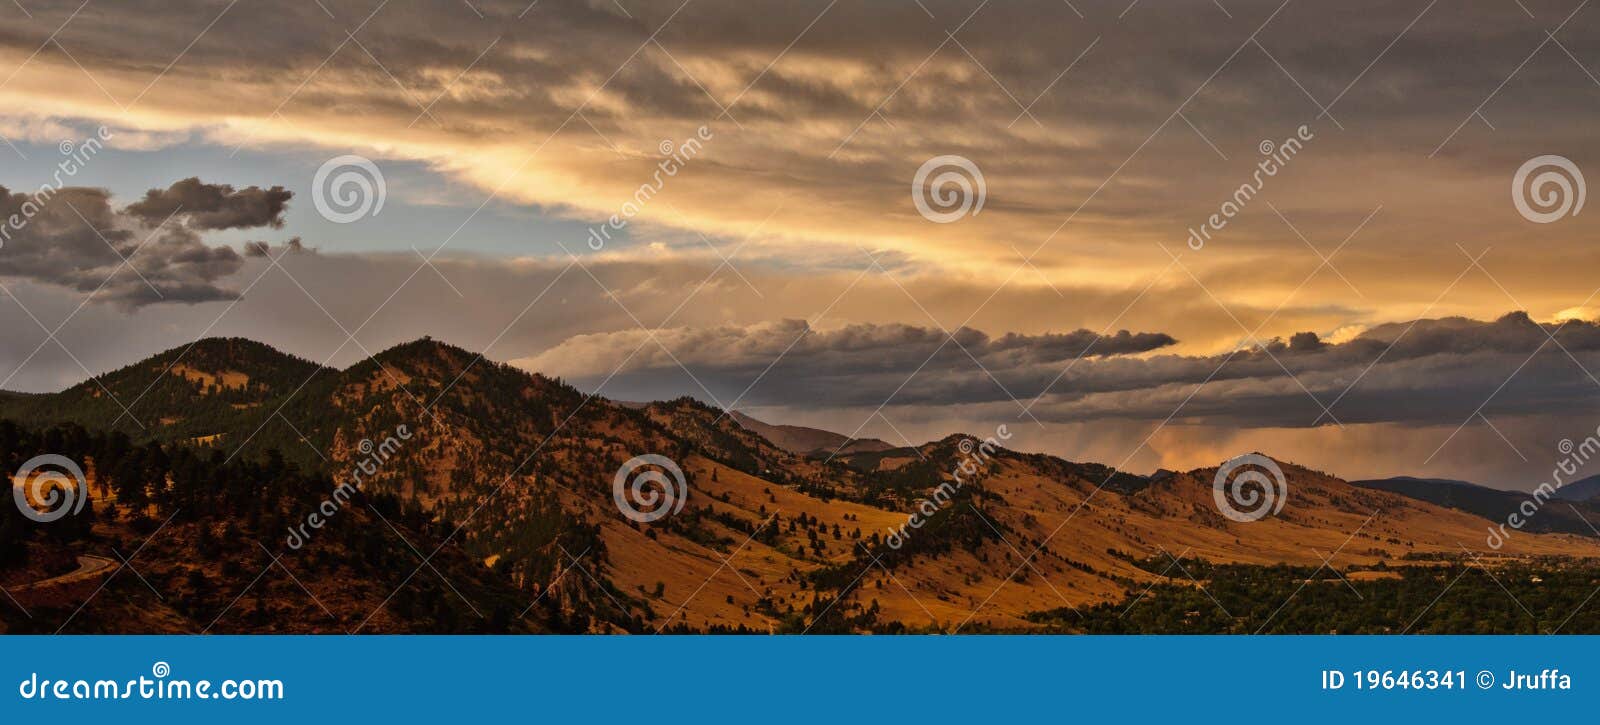 boulder colorado mountain range panorama